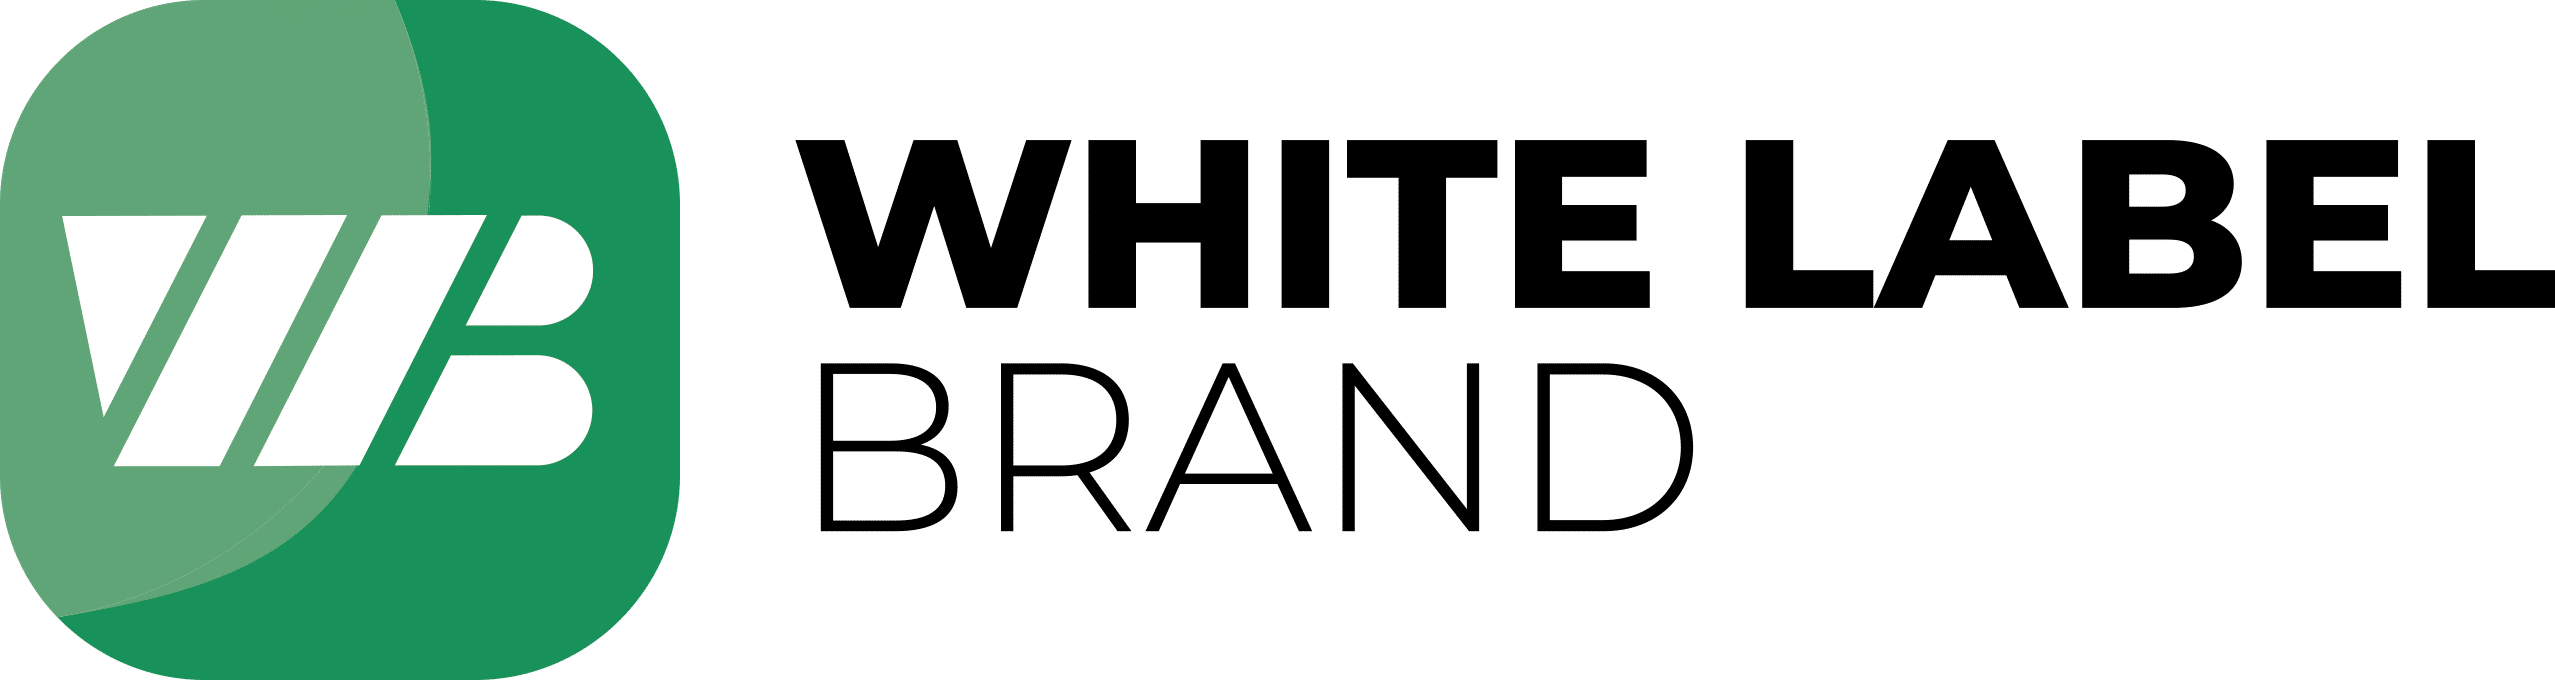 White Label Brand